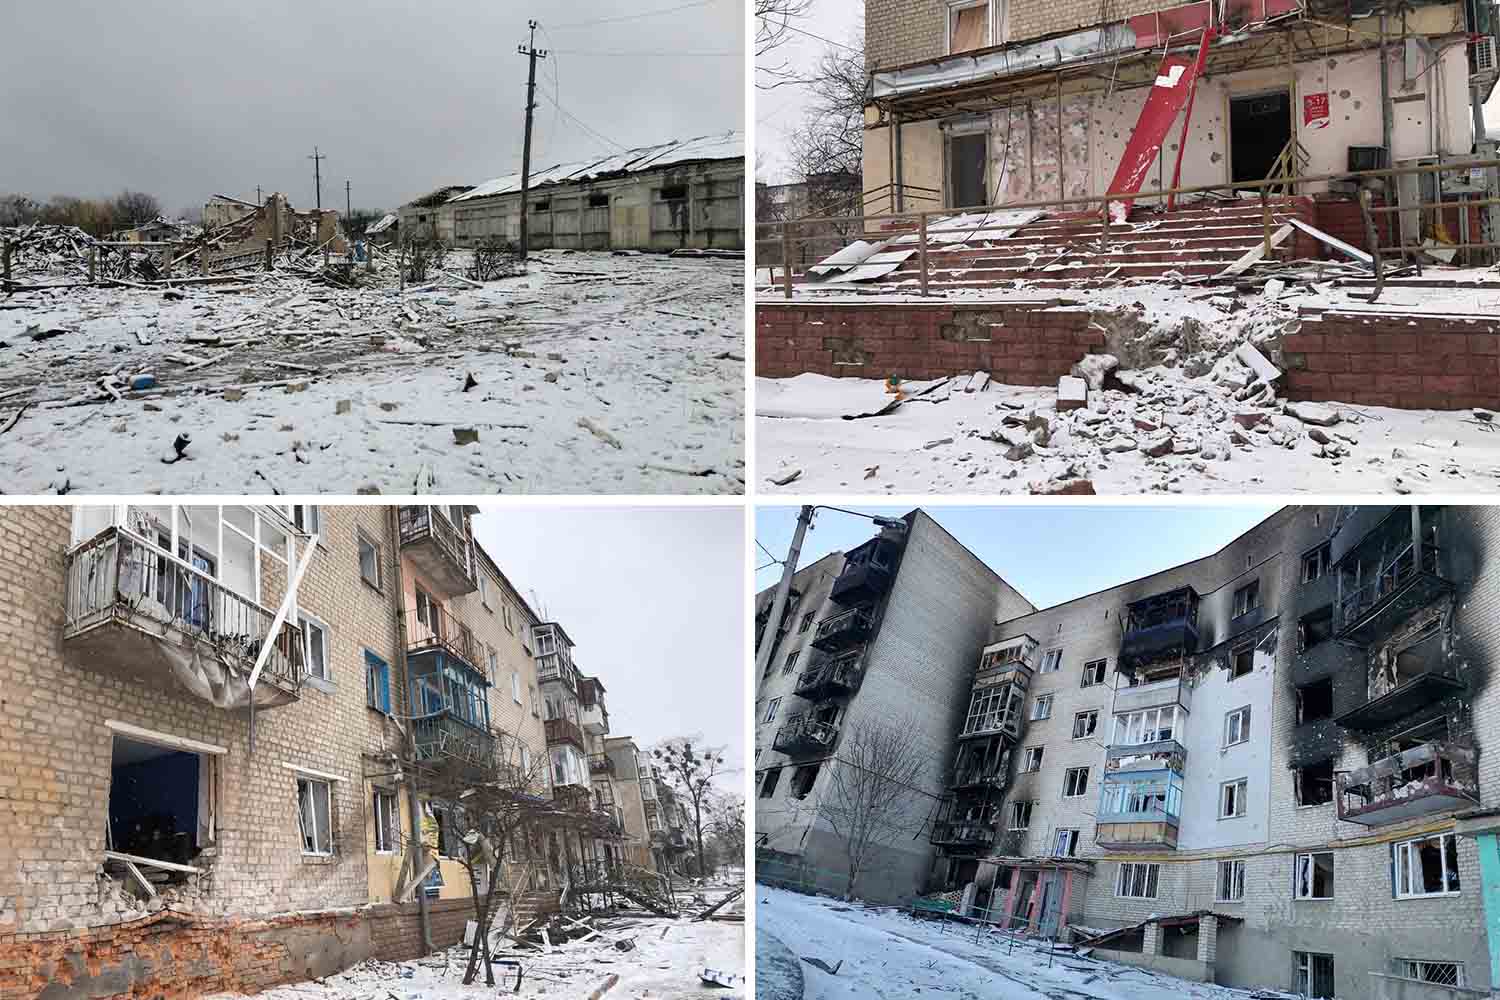 הרס מהפצצות רוסיות באיזיום. החל מה-8 במרץ לא ניתן לרכוש מוצרים בעיר, והתושבים מתקיימים מאז ממה שהצליחו לאגור (צילום: אלבום פרטי)